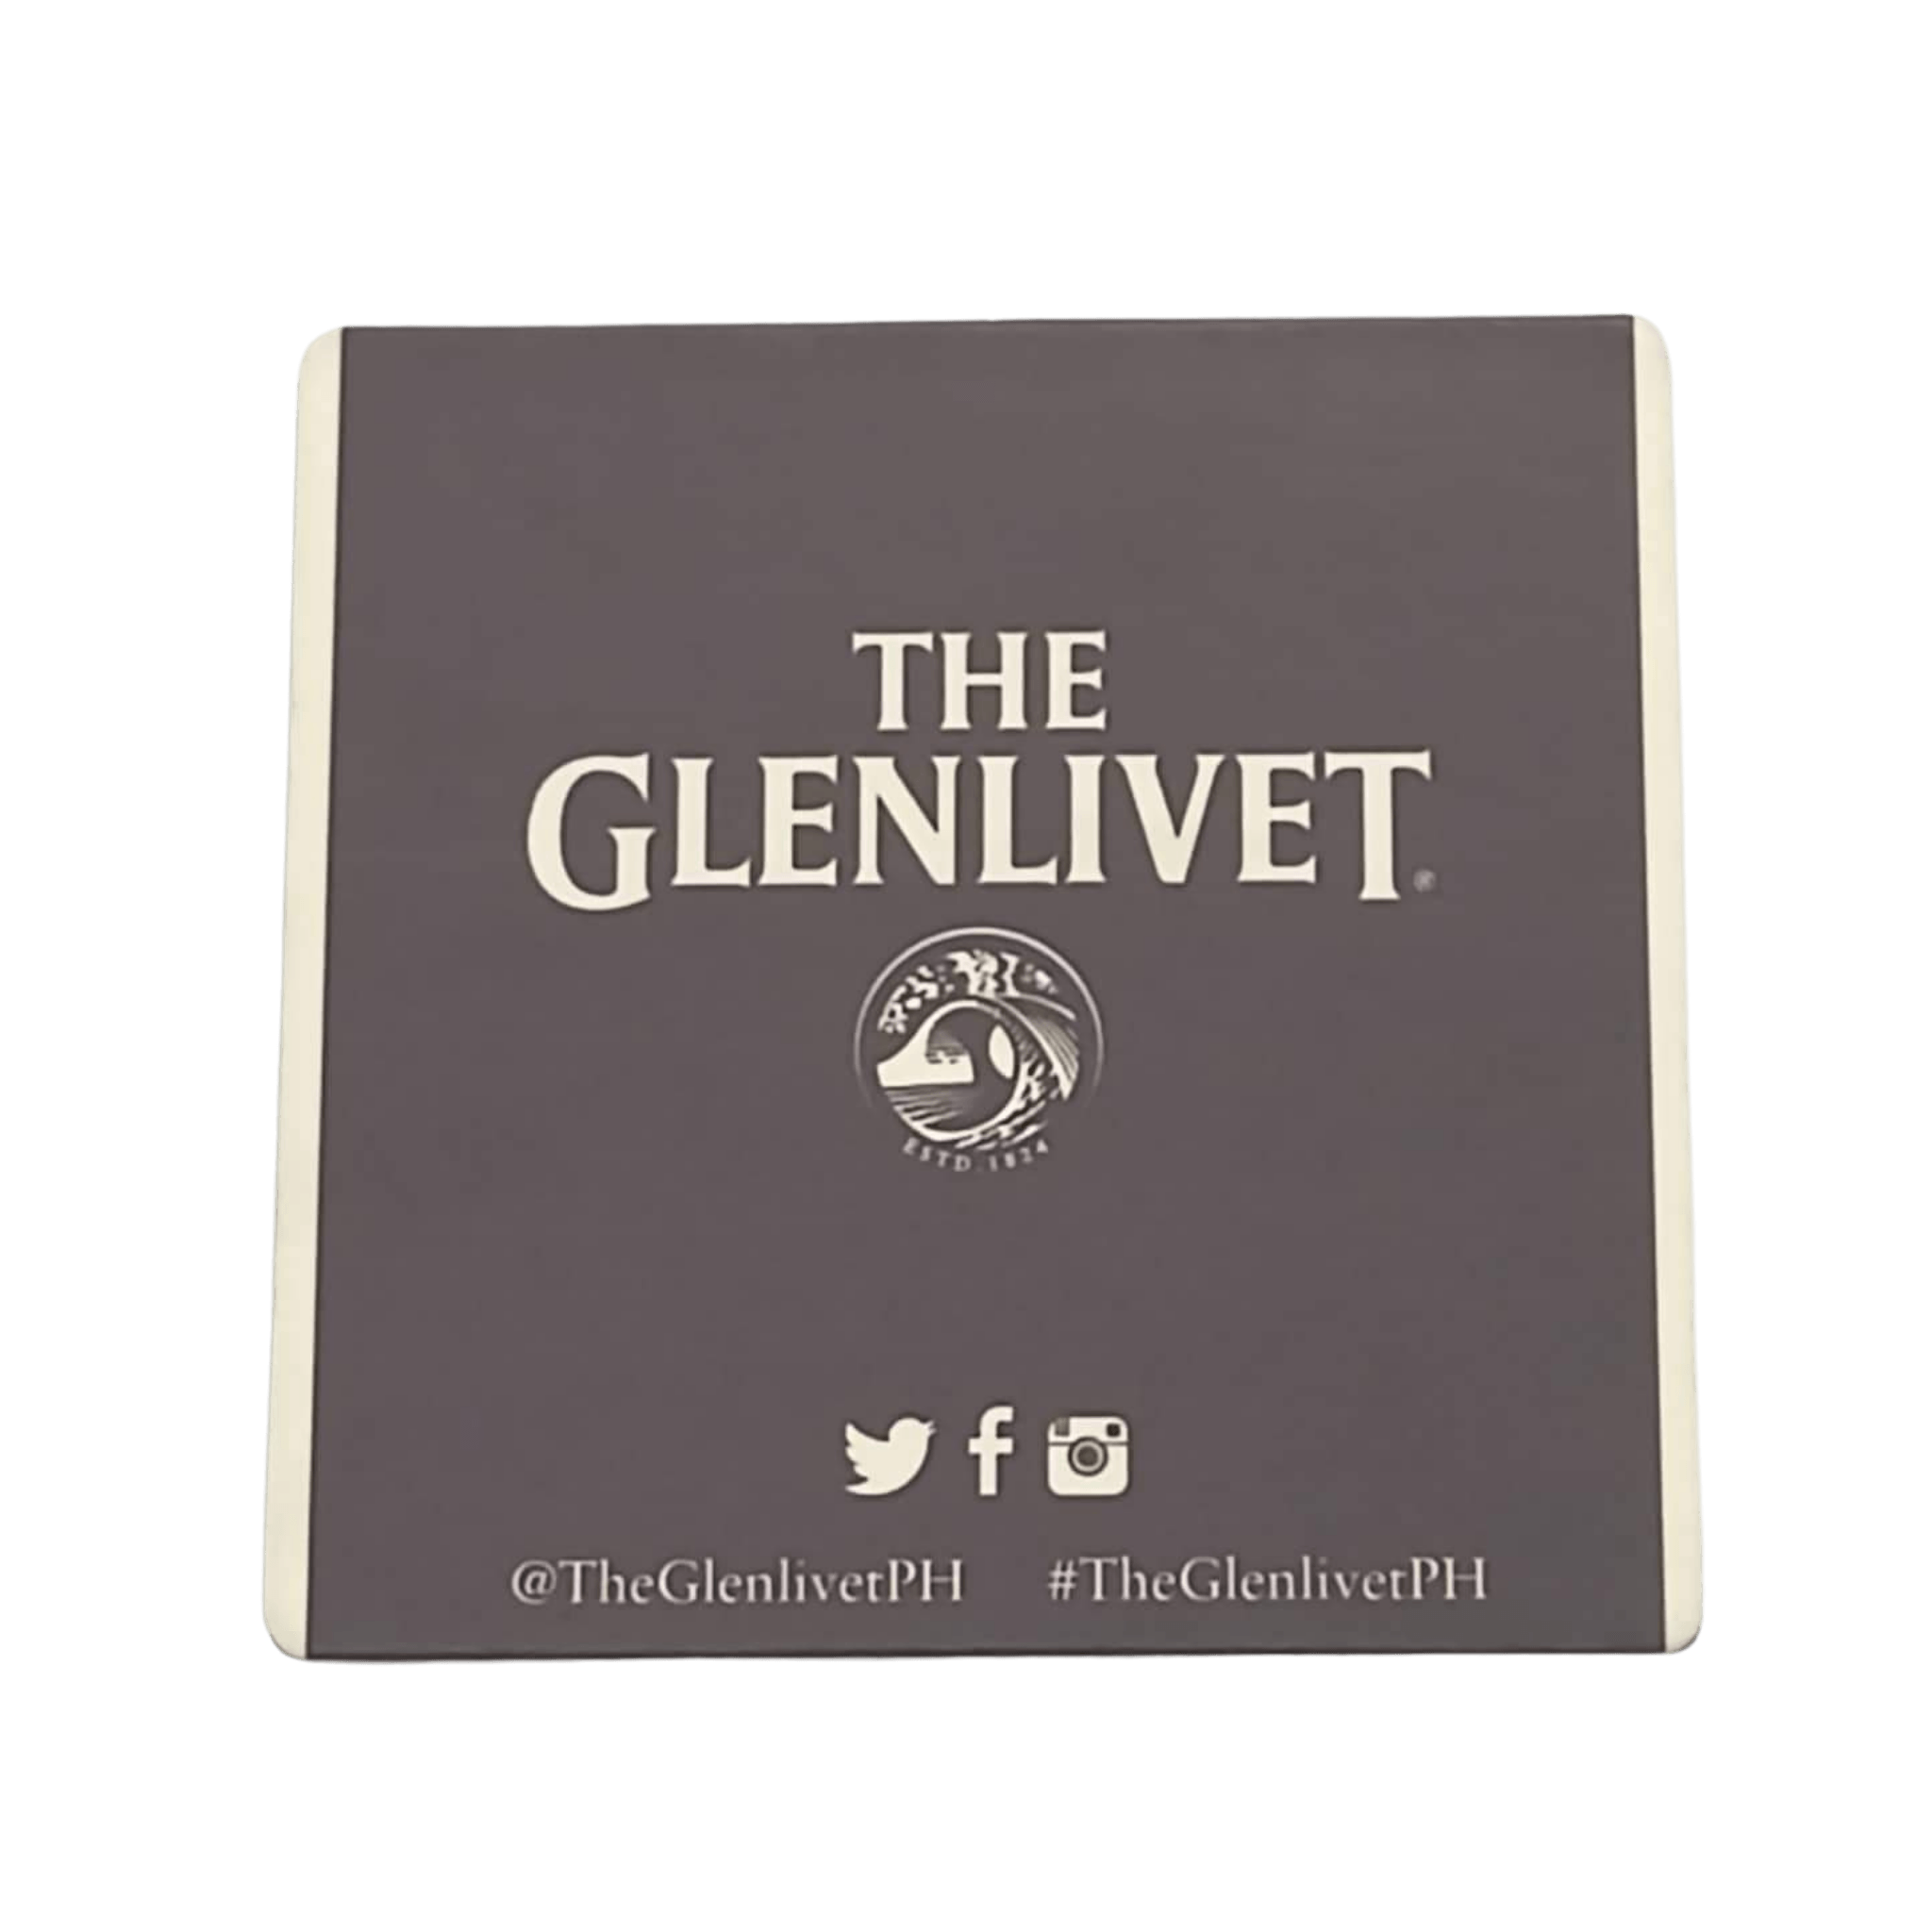 The Glenlivet Coaster Board (Freebie) at ₱0.00